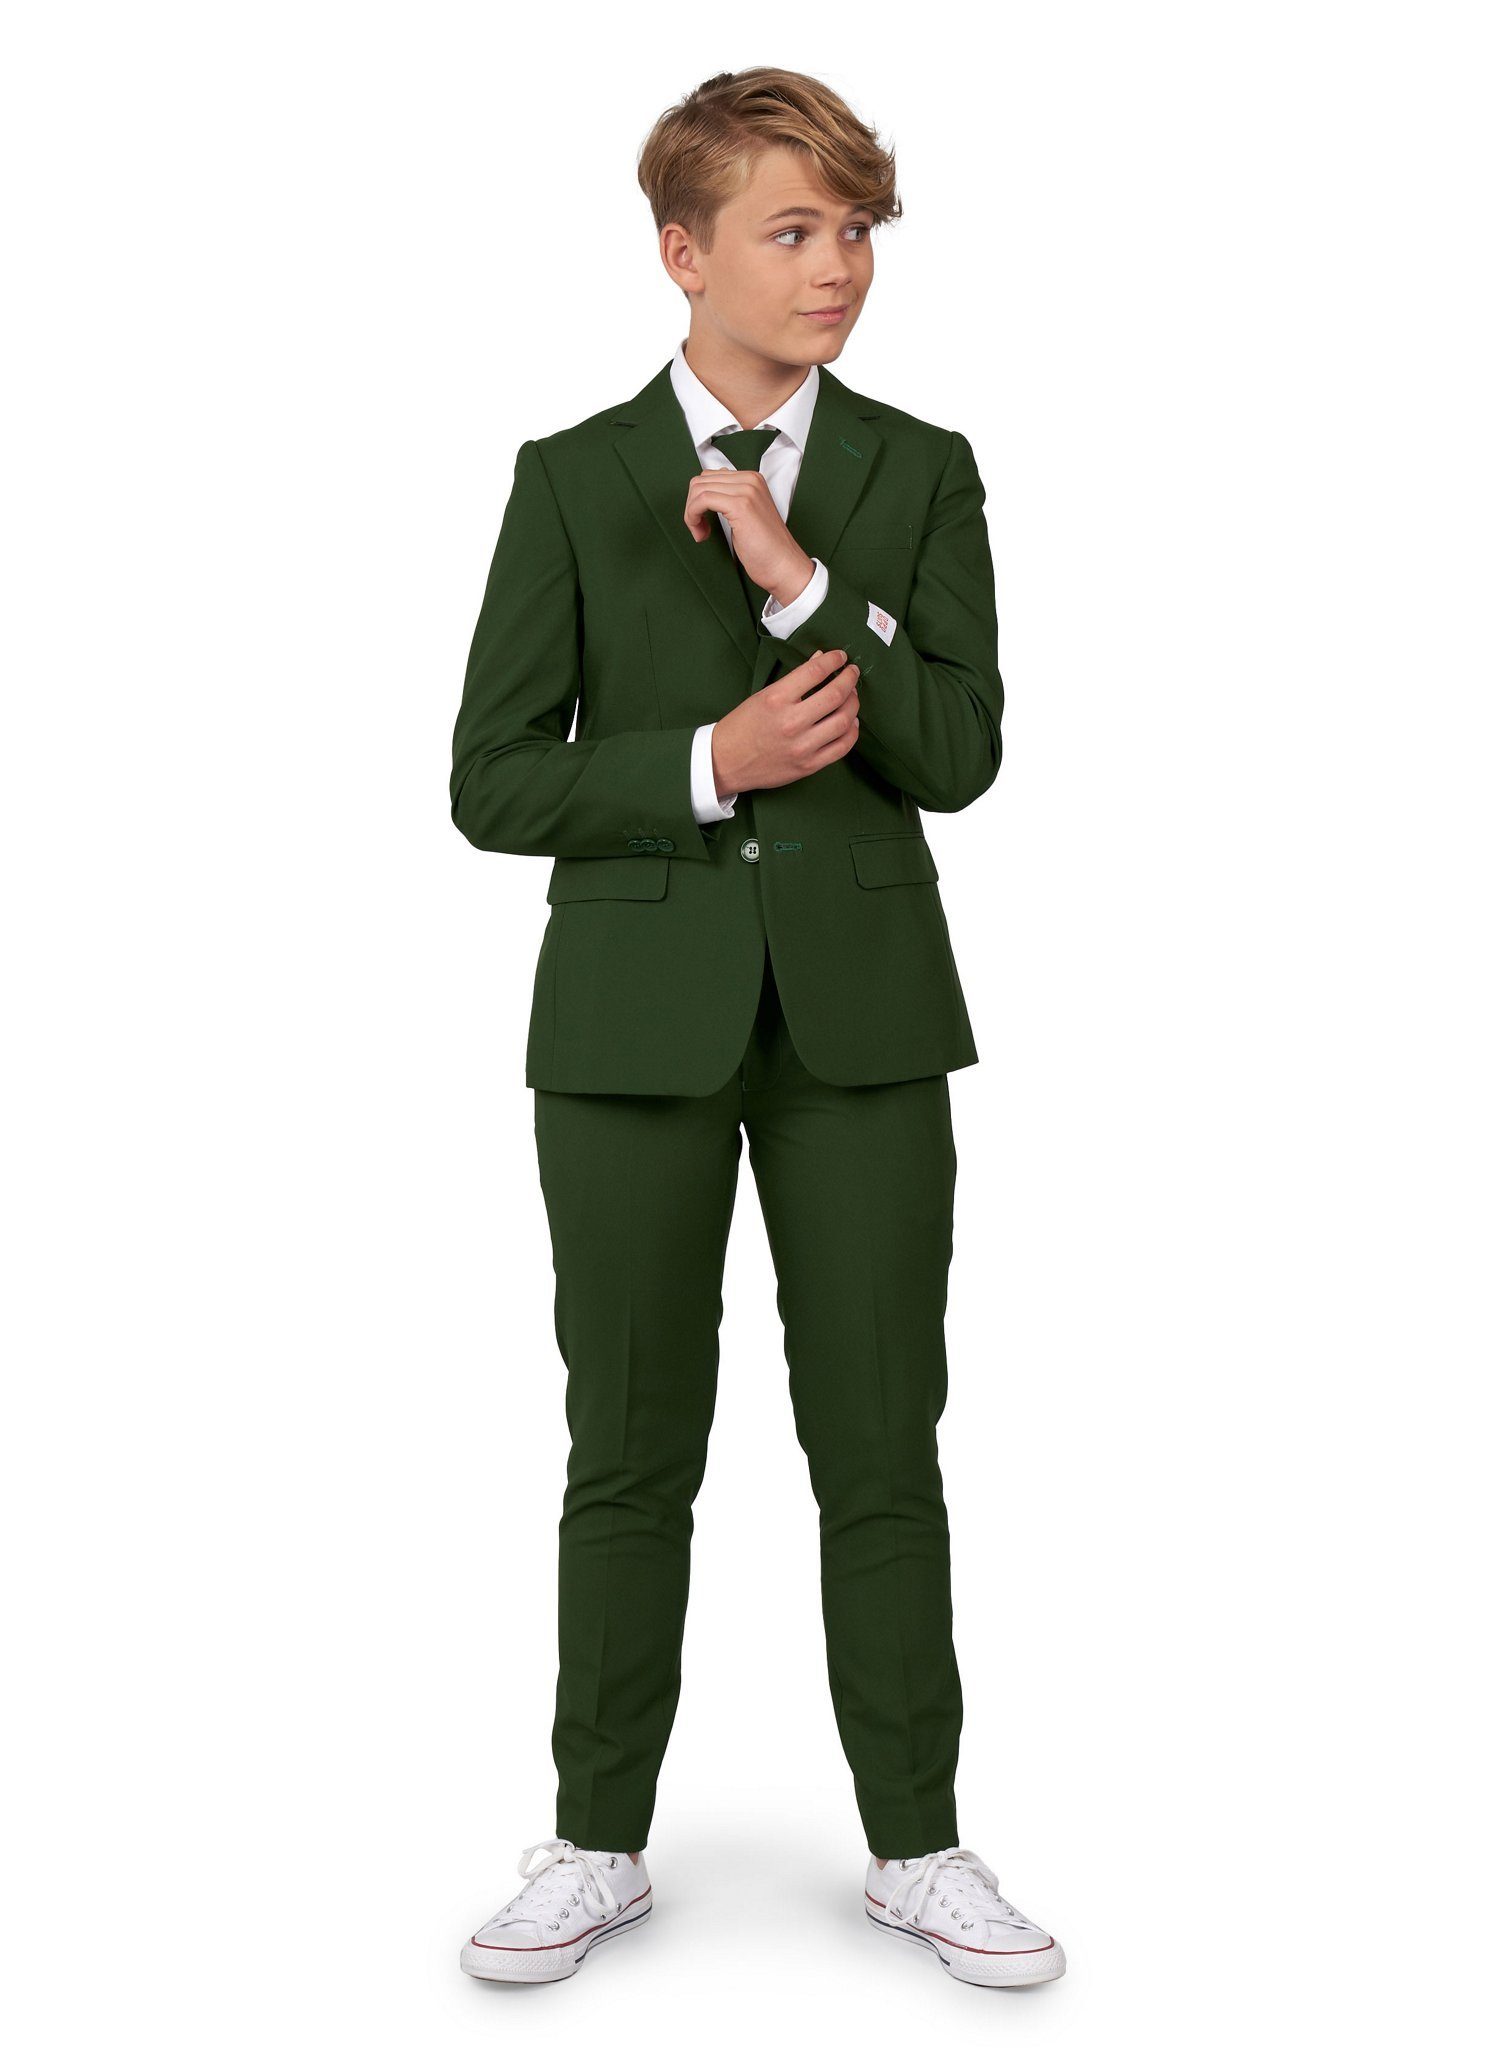 Opposuits Kinderanzug Teen Glorious Green Anzug für Jugendliche Grün, grün, grün sind alle meine Kleider!